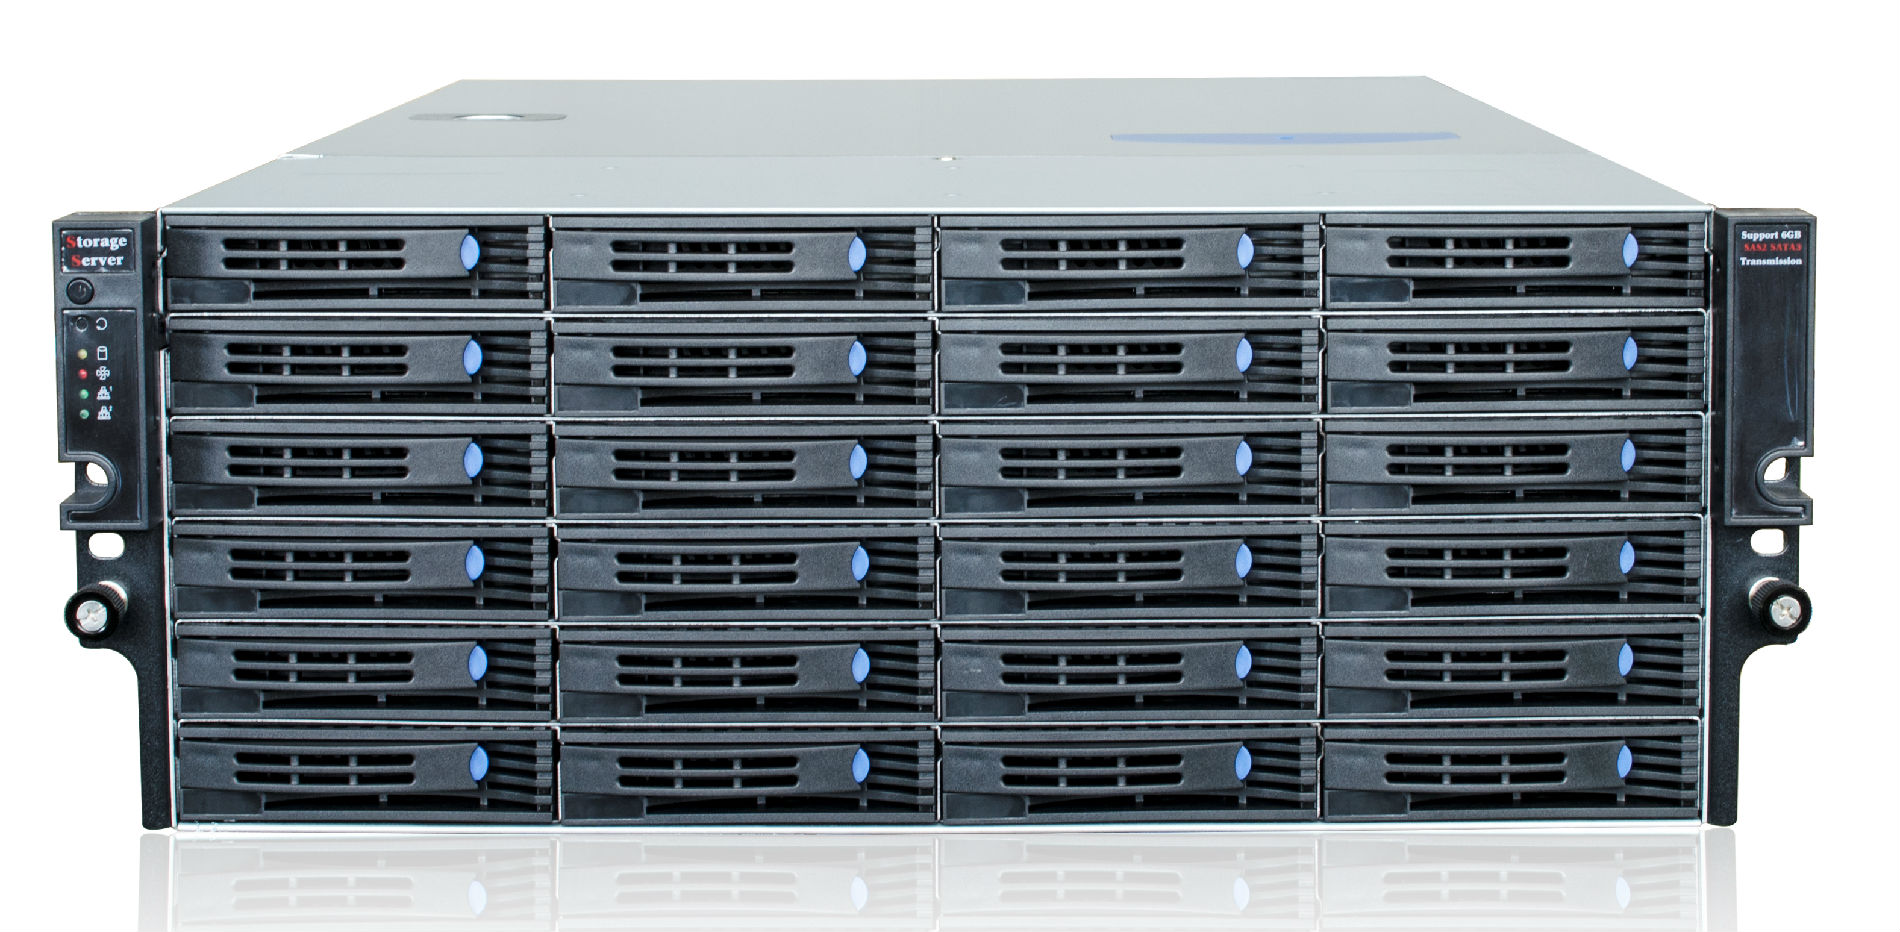 企业级网络存储系统-SV2400